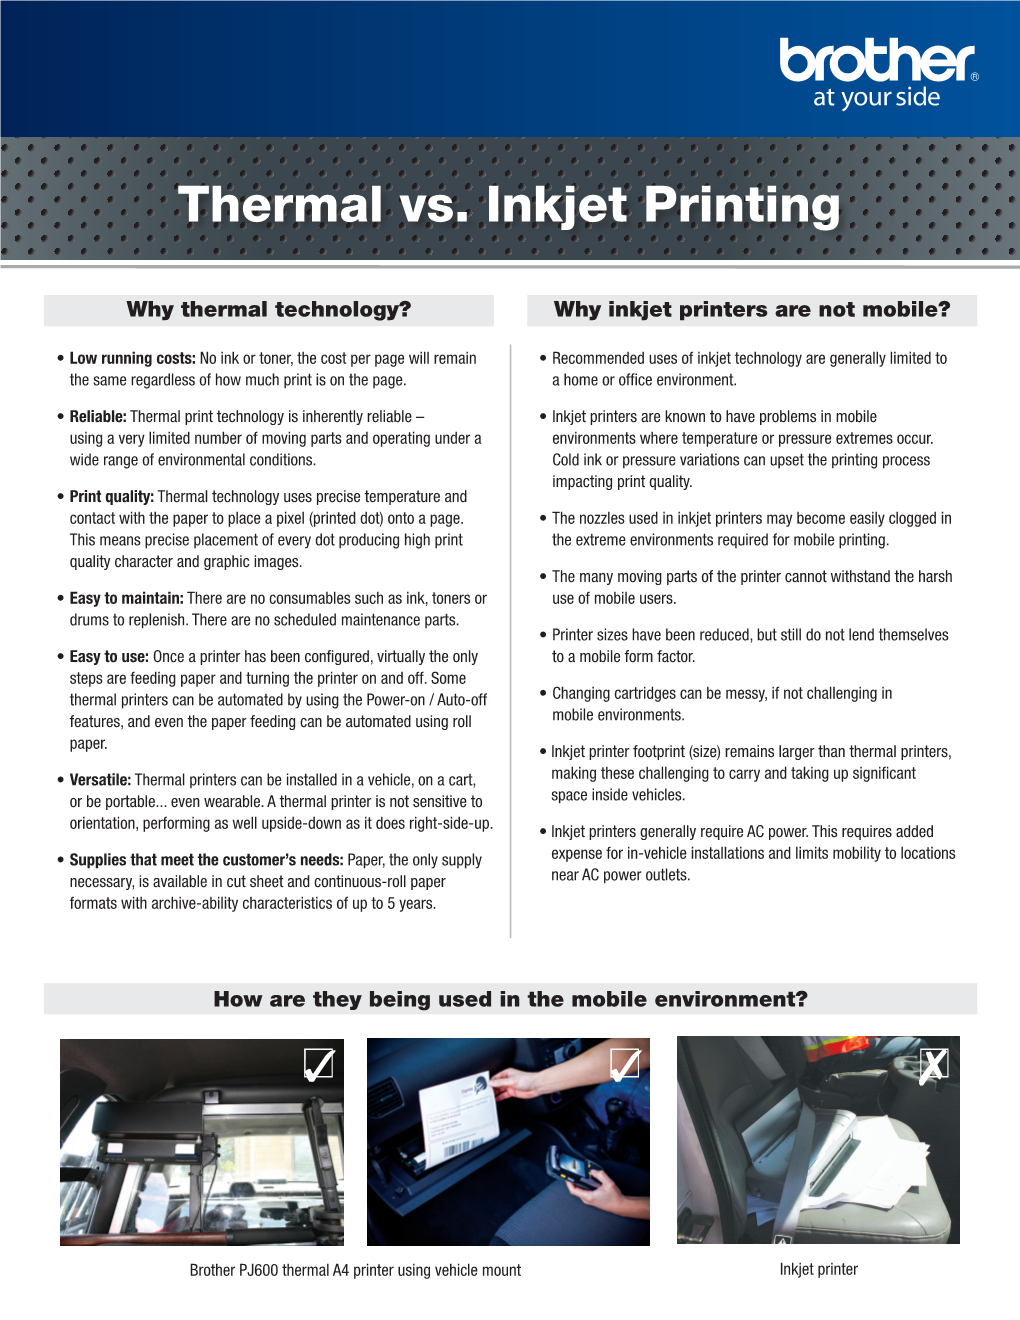 Thermal Vs. Inkjet Printing